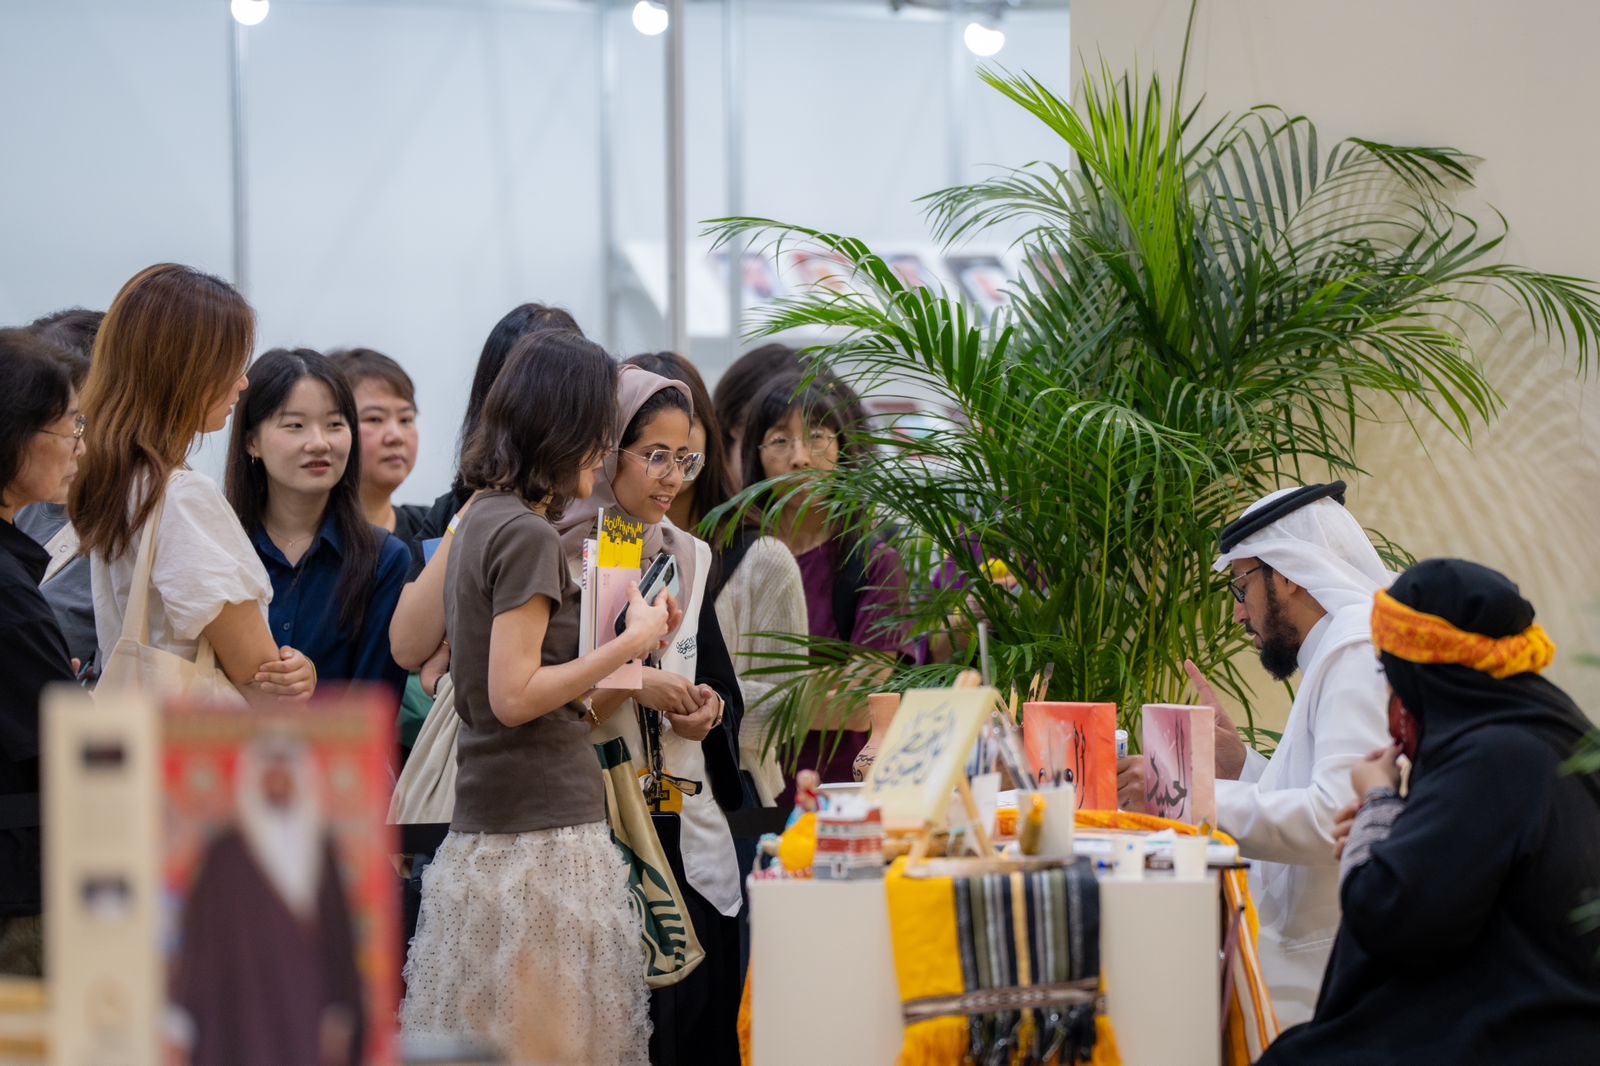 السعودية تختتم مشاركتها في معرض سيئول الدولي للكتاب بمشاركة واسعة من الجمهور الكوري